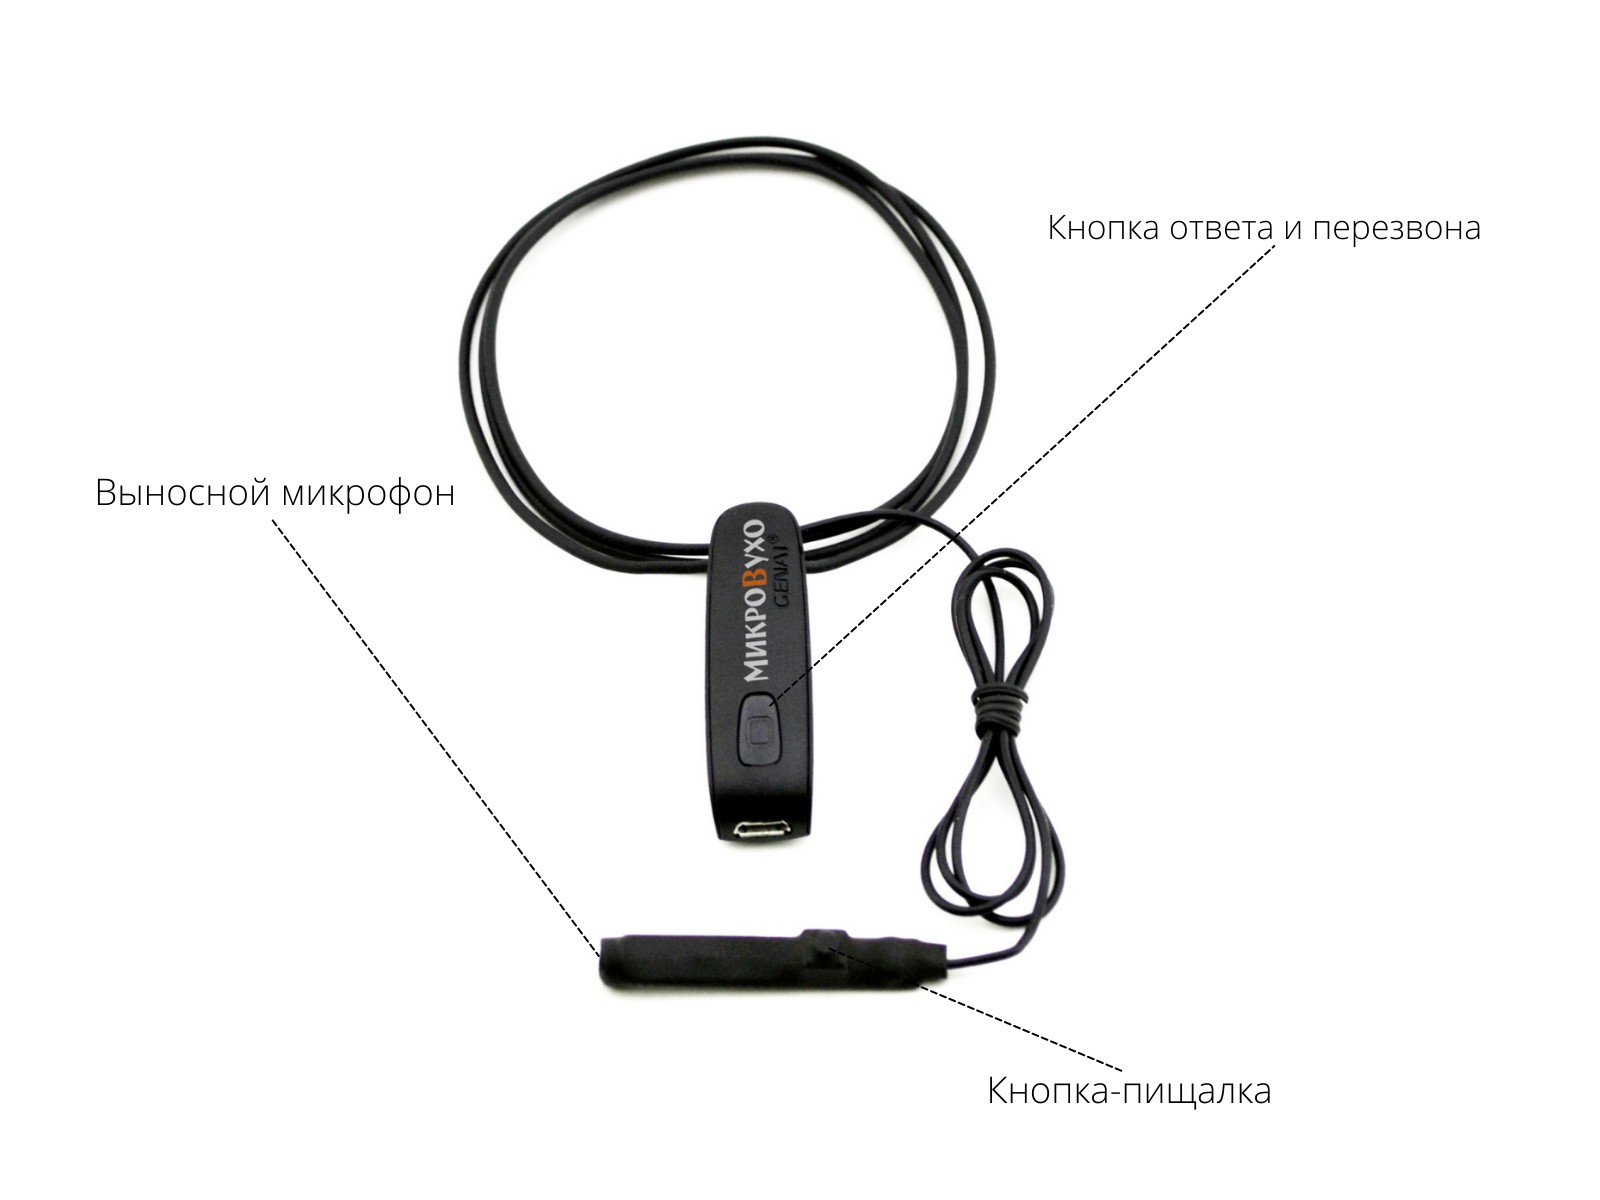 Универсальная гарнитура Bluetooth Basic с капсулой K5 4 мм и магнитами 2 мм - изображение 7